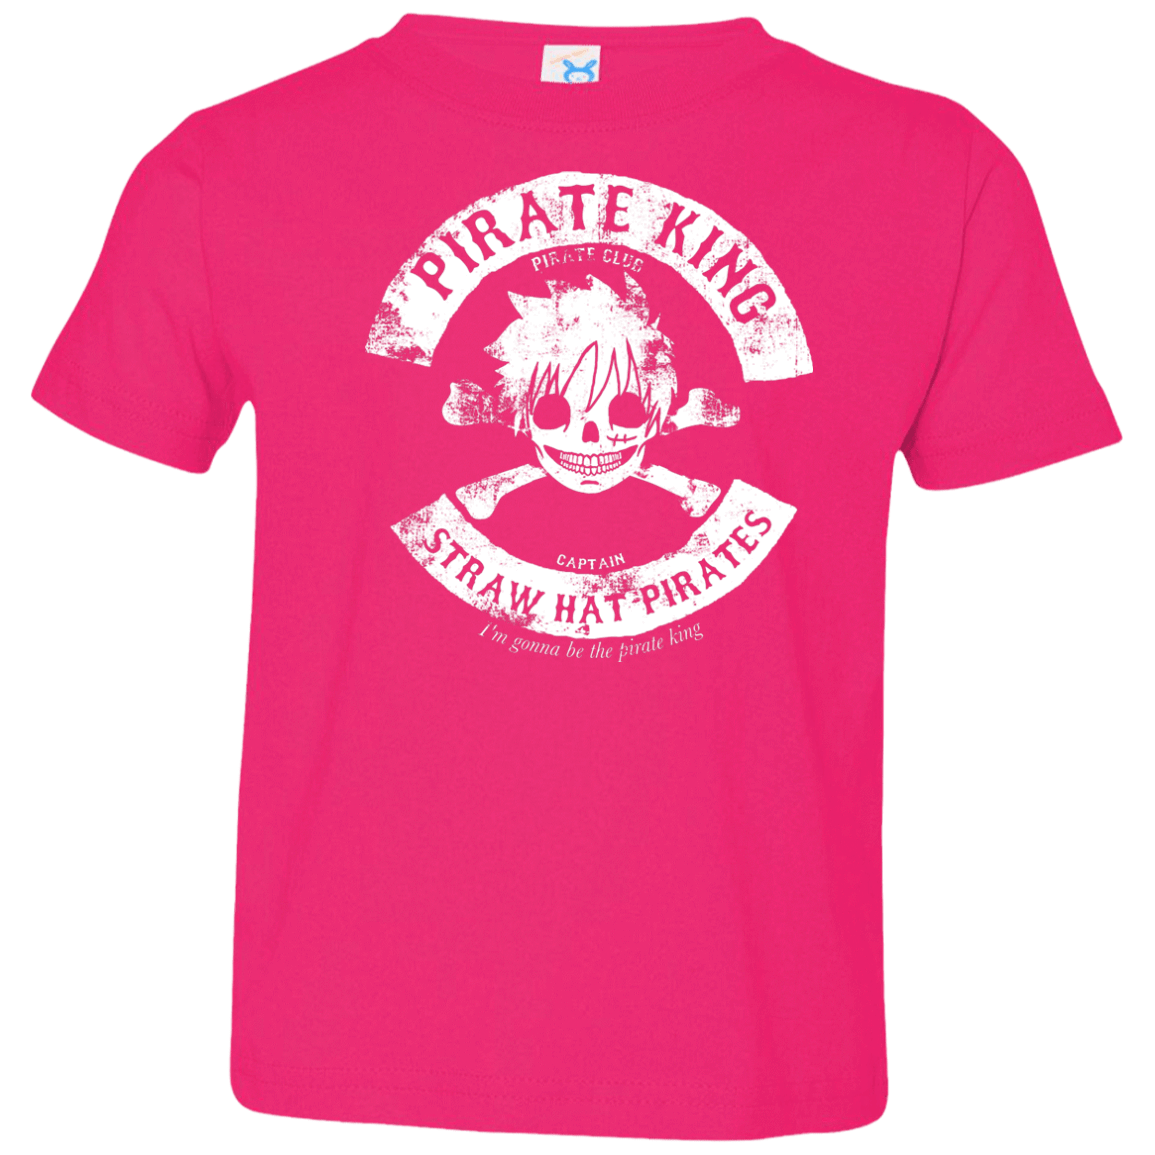 T-Shirts Hot Pink / 2T Pirate King Skull Toddler Premium T-Shirt